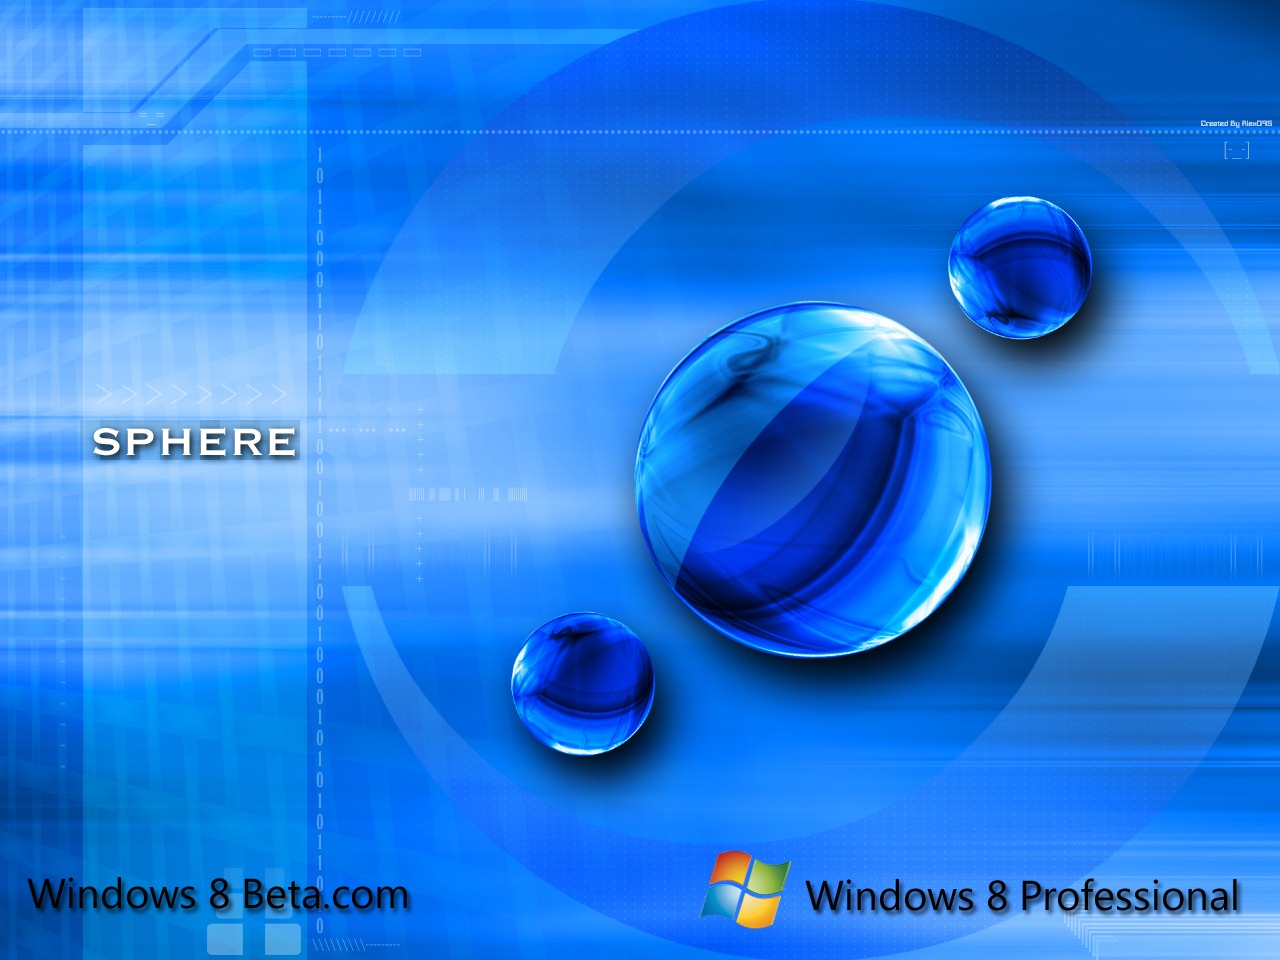 http://3.bp.blogspot.com/-xSHV5khCFck/T0eA-KlmdWI/AAAAAAAABT8/E-HkmeVAPi8/s1600/Wallpapers+Gambar+Windows+8+Microsoft+(1).jpg